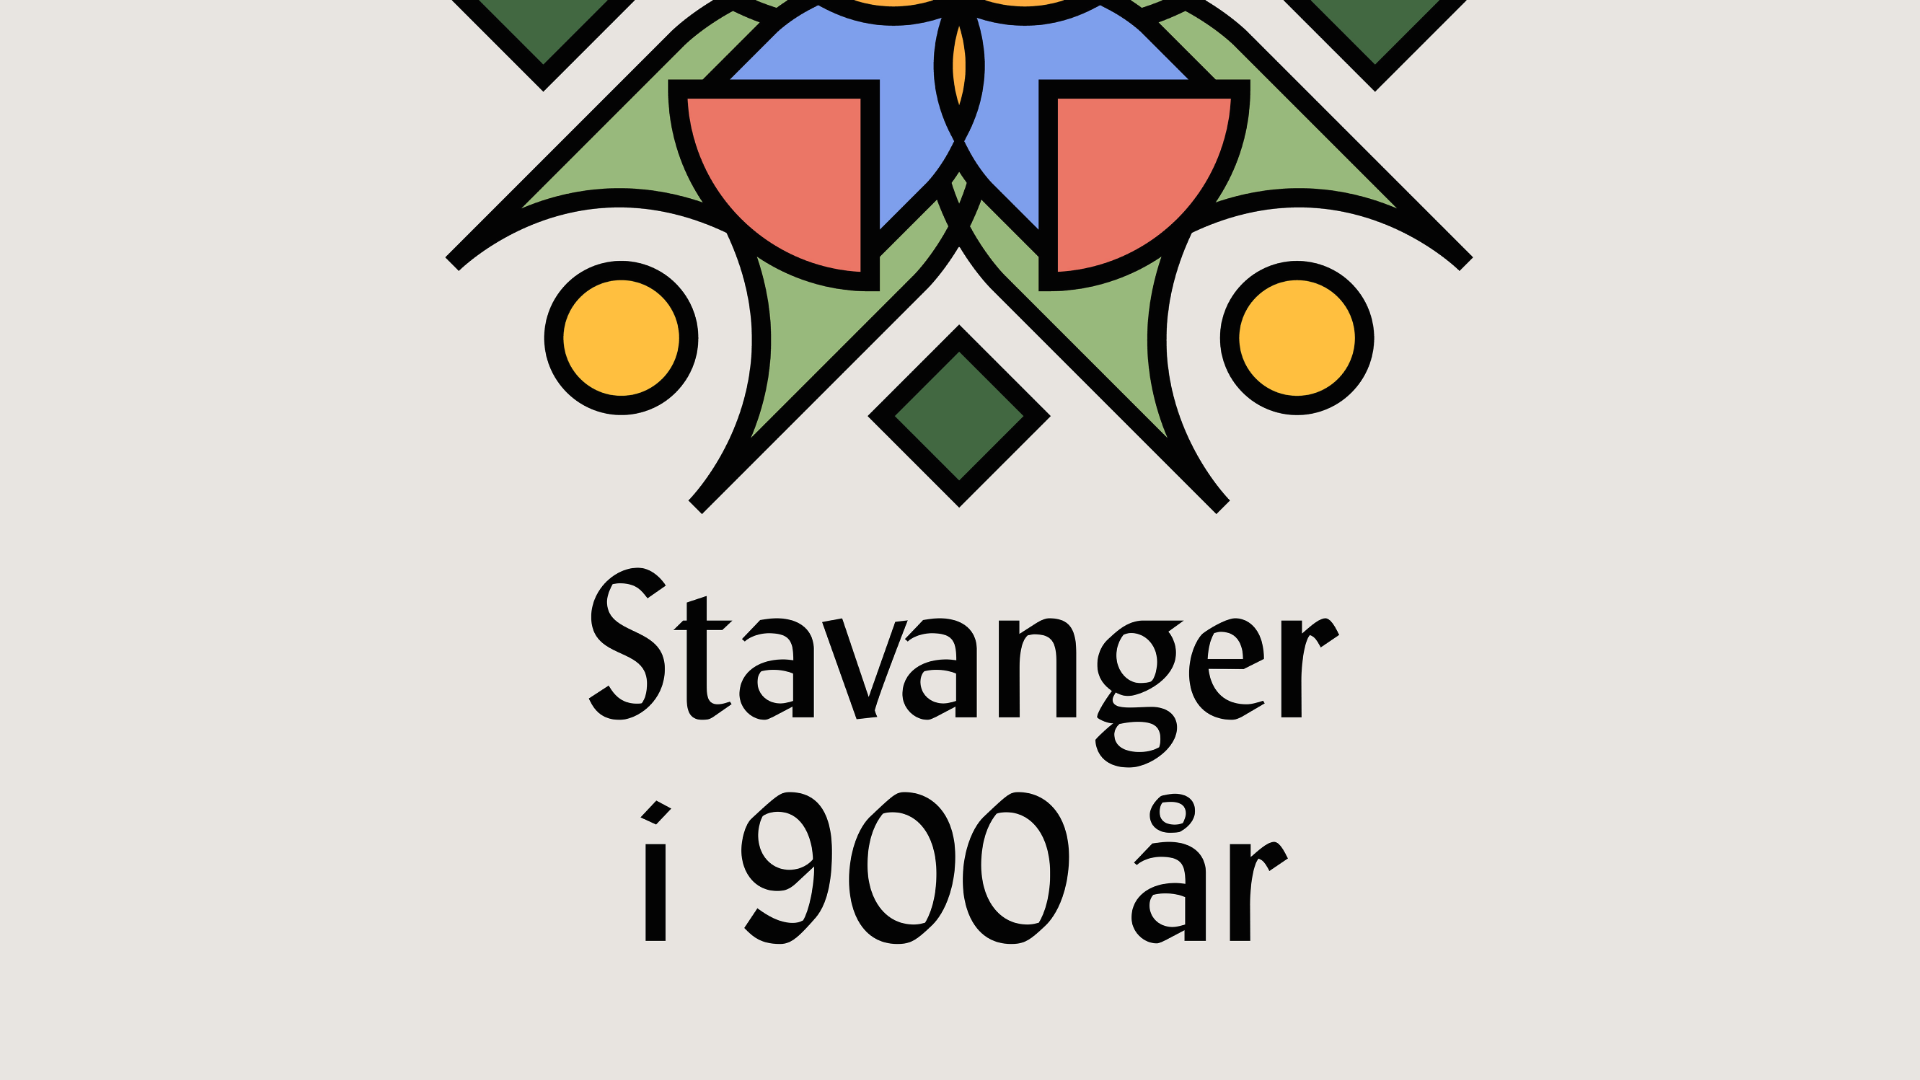 Logo podkast-serie "Stavanger i 900 år".